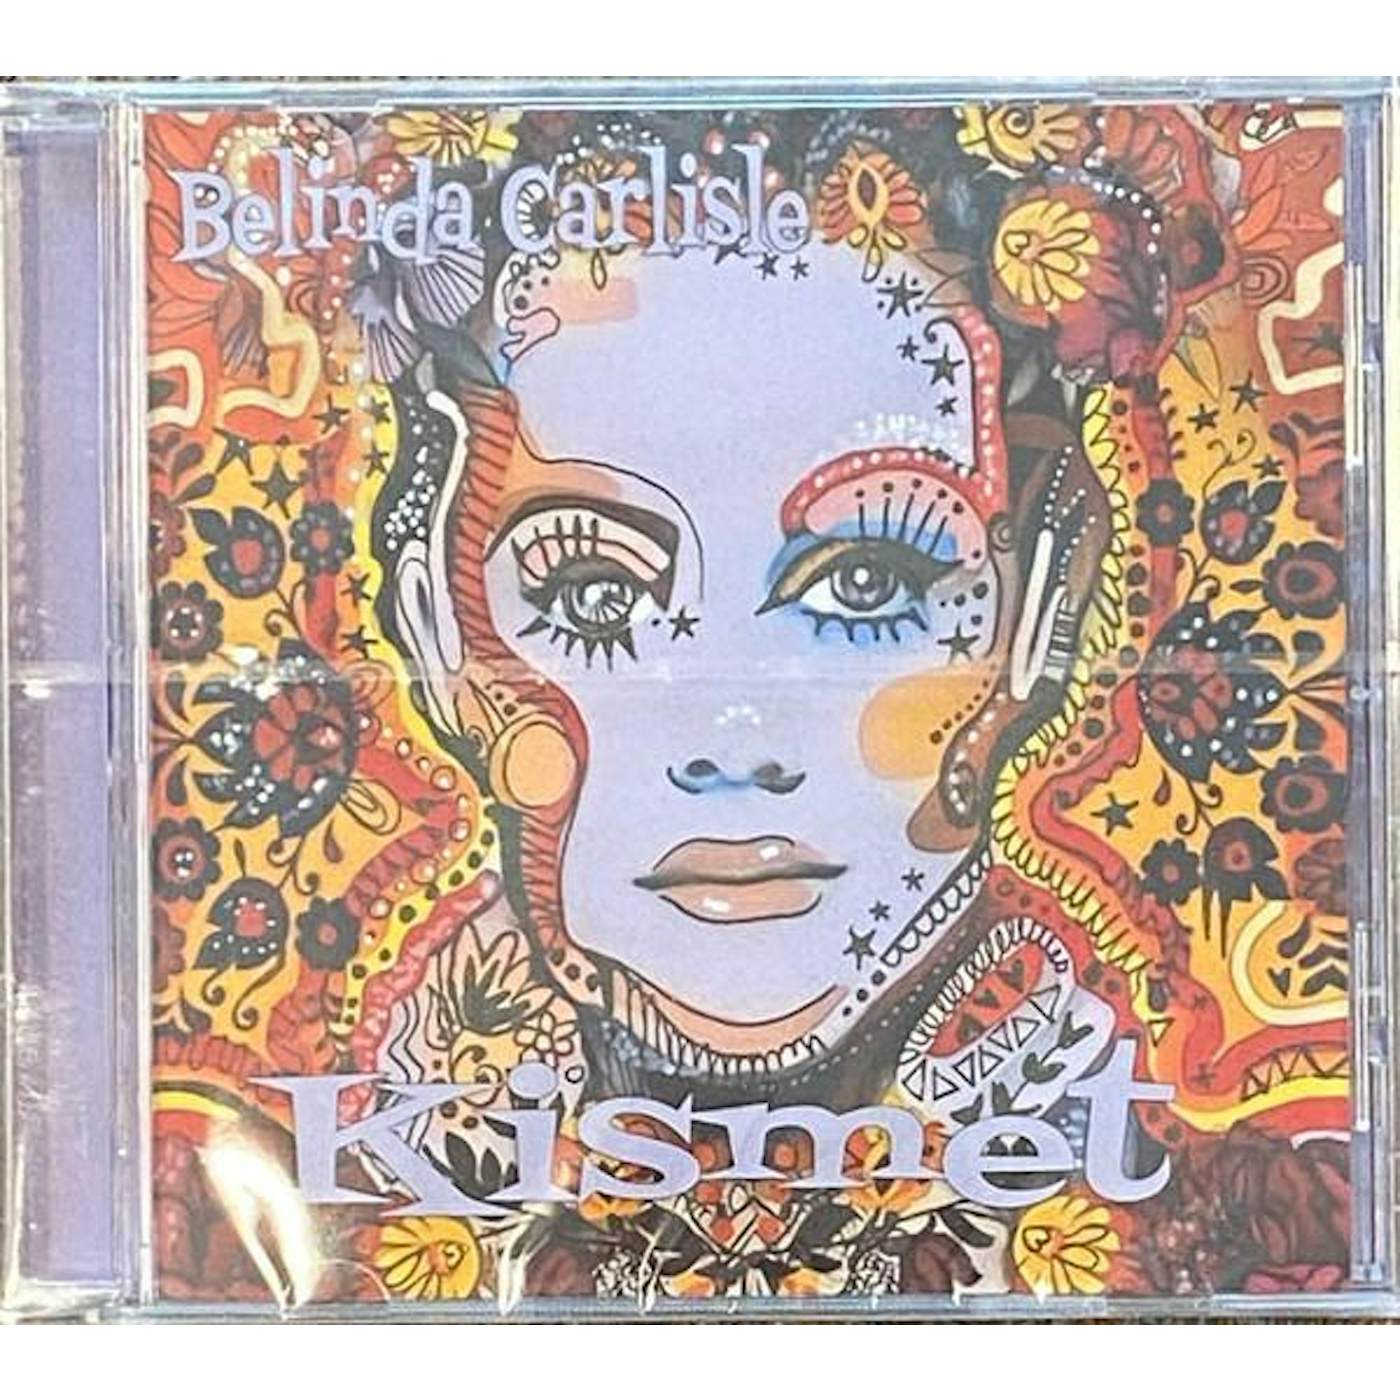 Belinda Carlisle KISMET CD